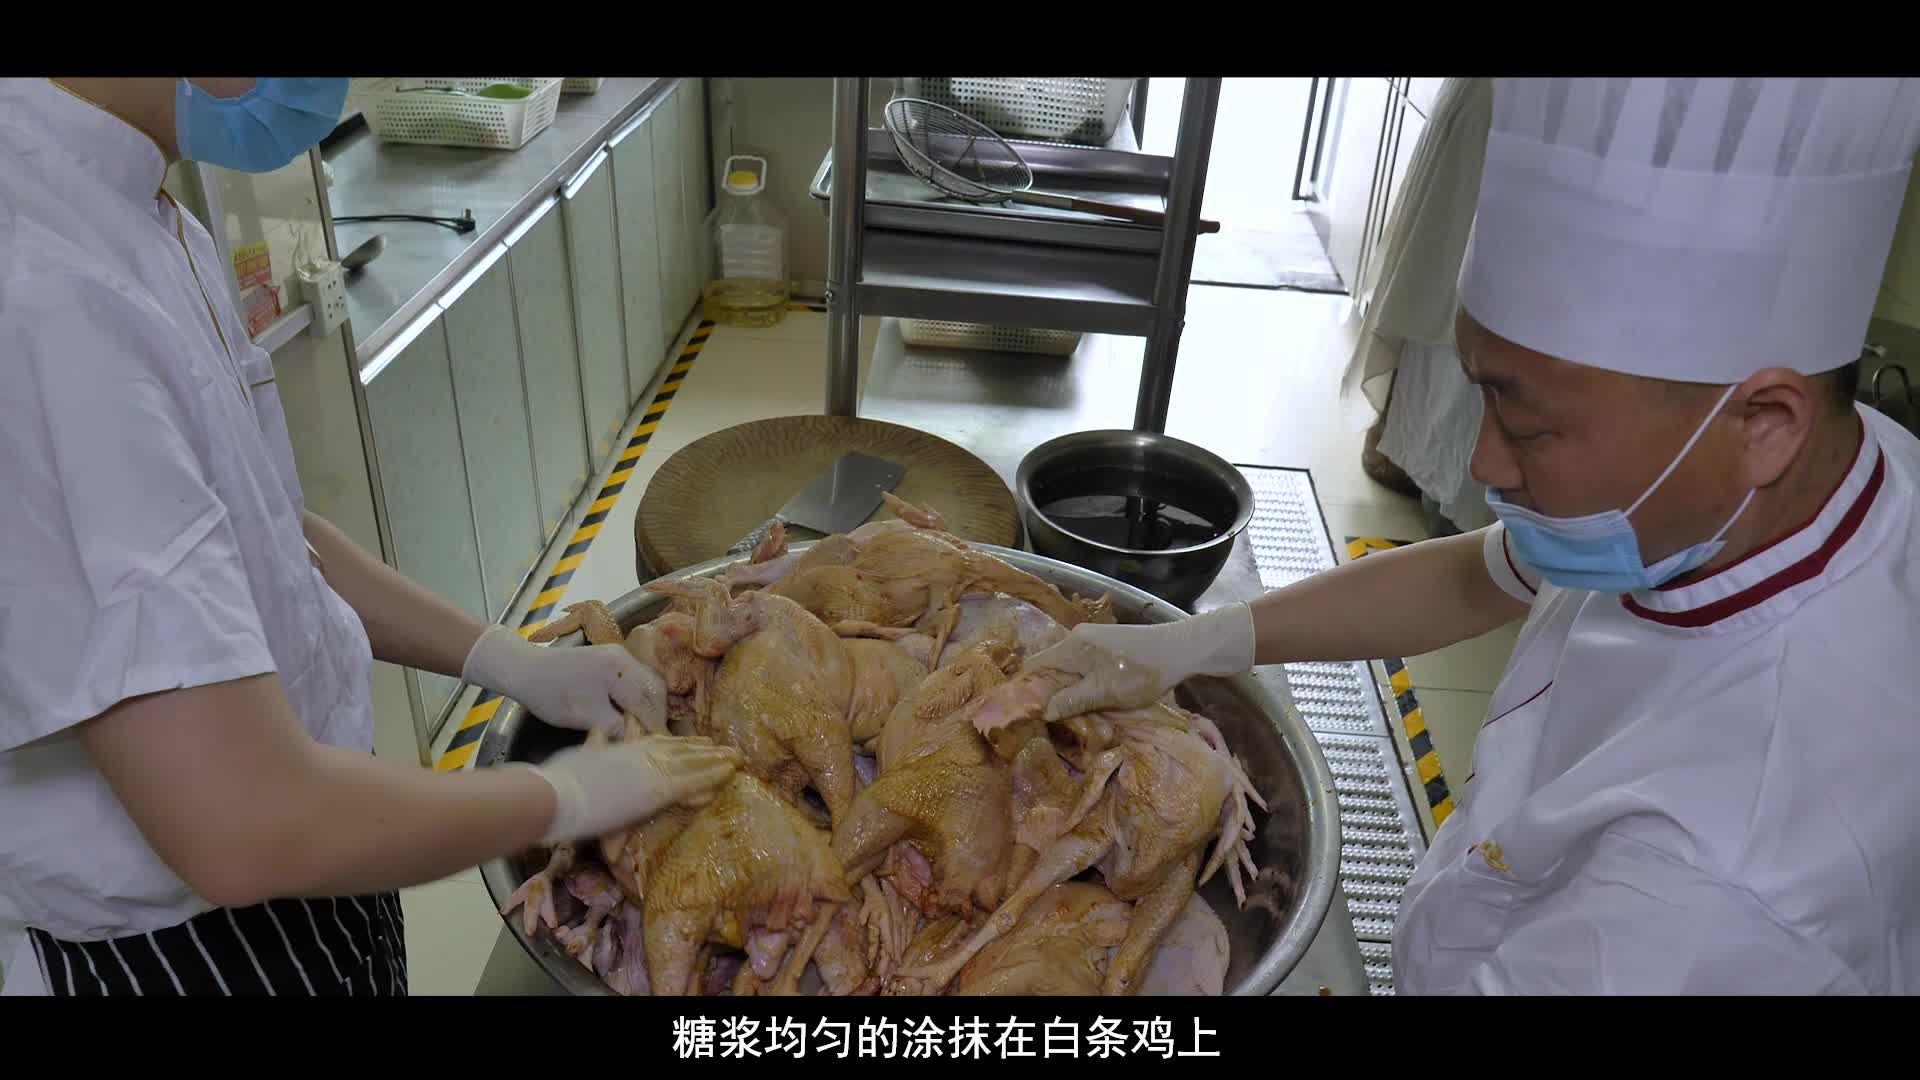 短视频《非遗文化·匠心传承》——独臂张烧鸡制作技艺